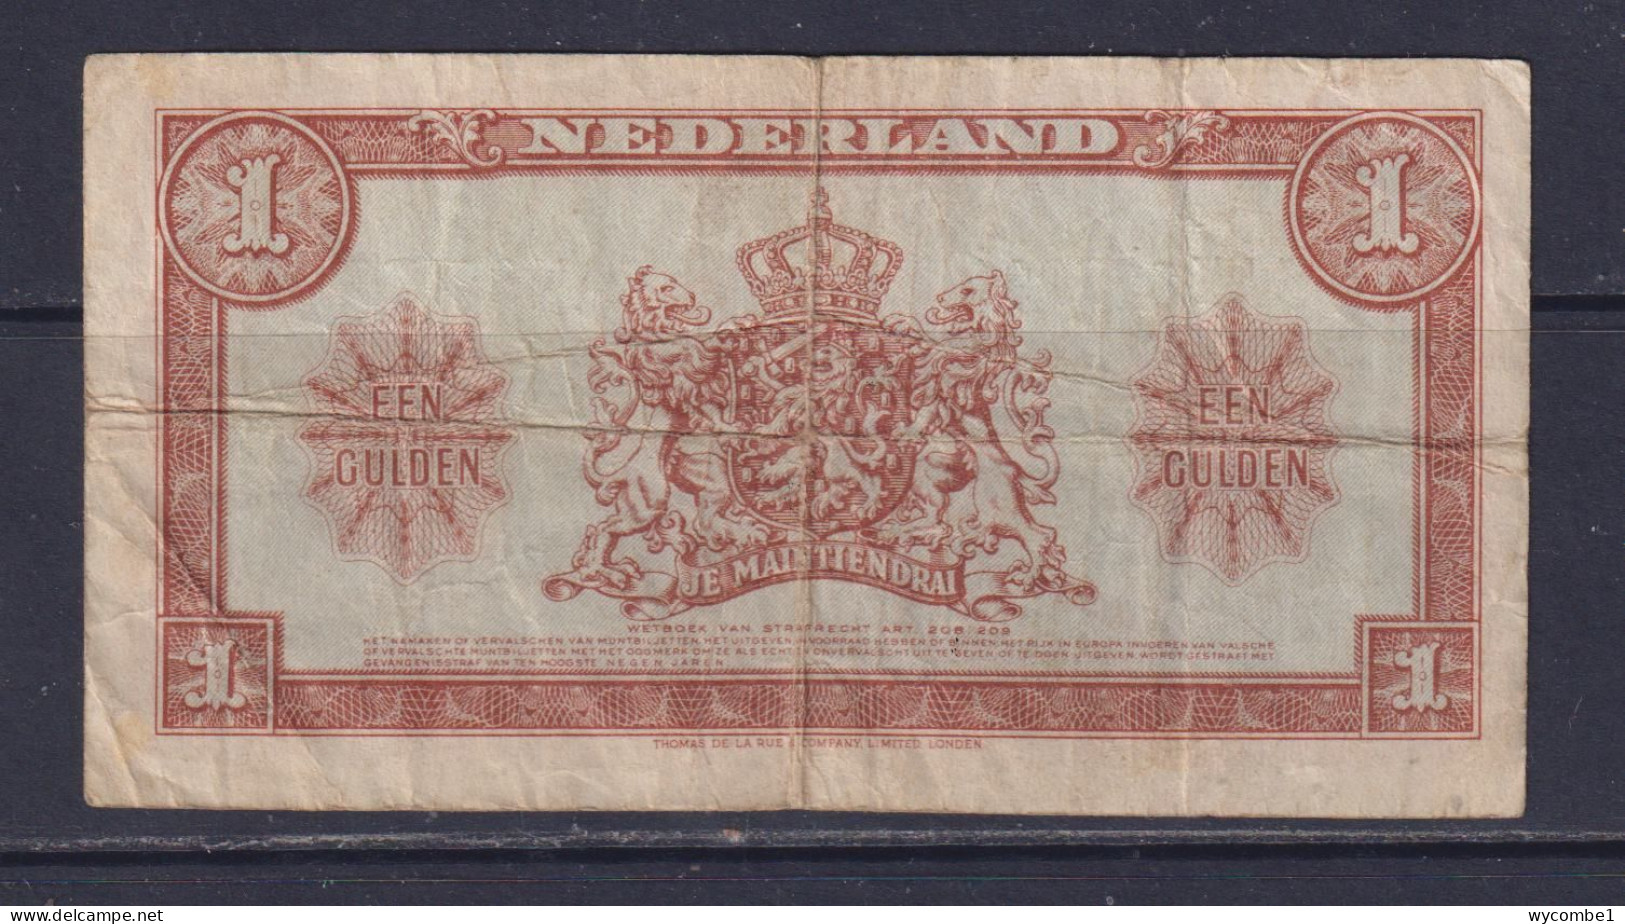 NETHERLANDS - 1945 1 Gulden Circulated Banknote - 1 Gulden